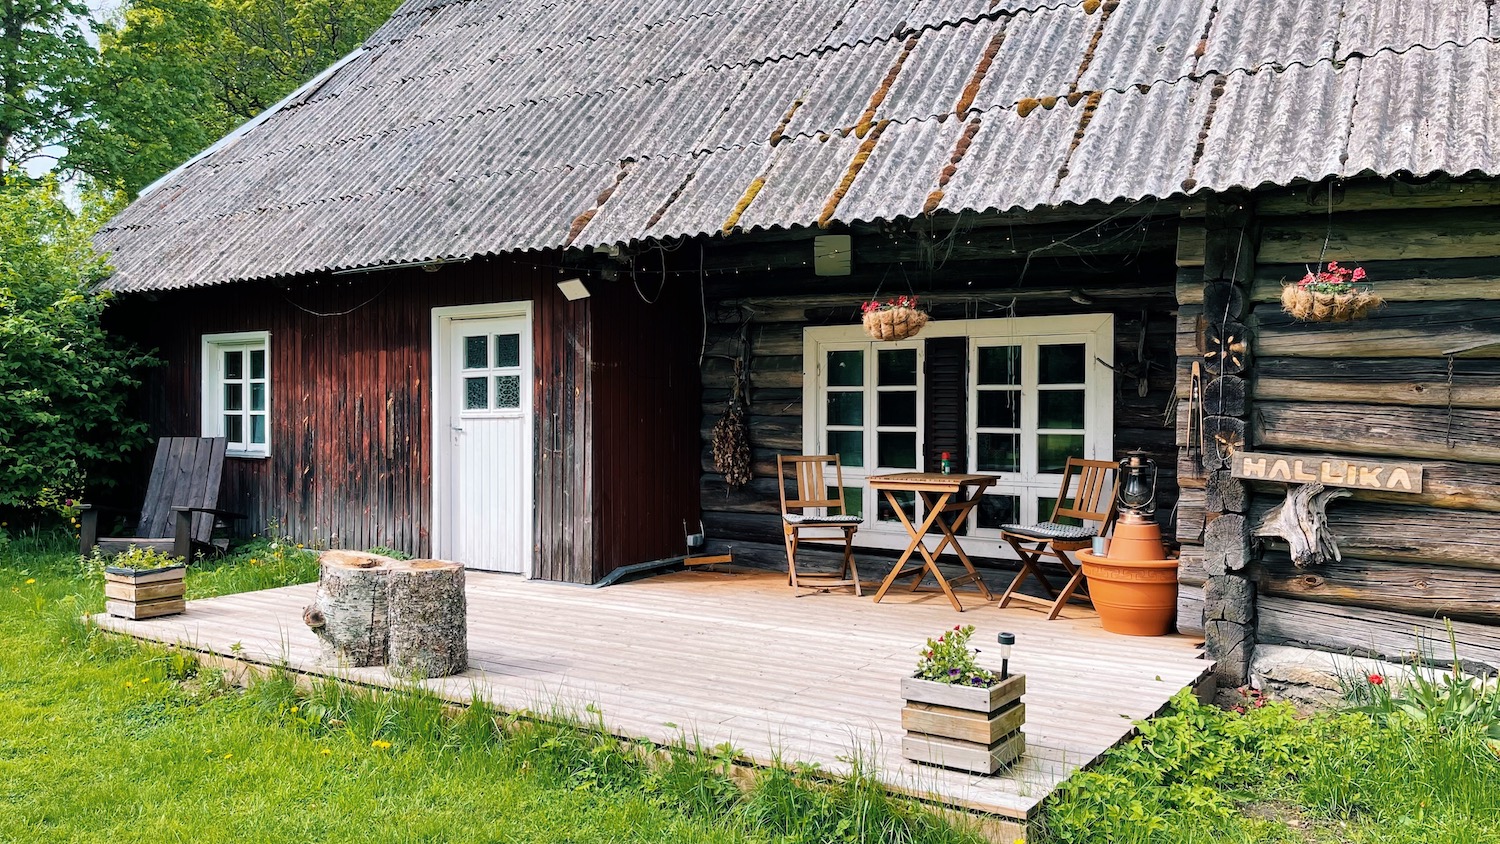 Hallika Talu accommodation in Estonia, Eesti Paigad